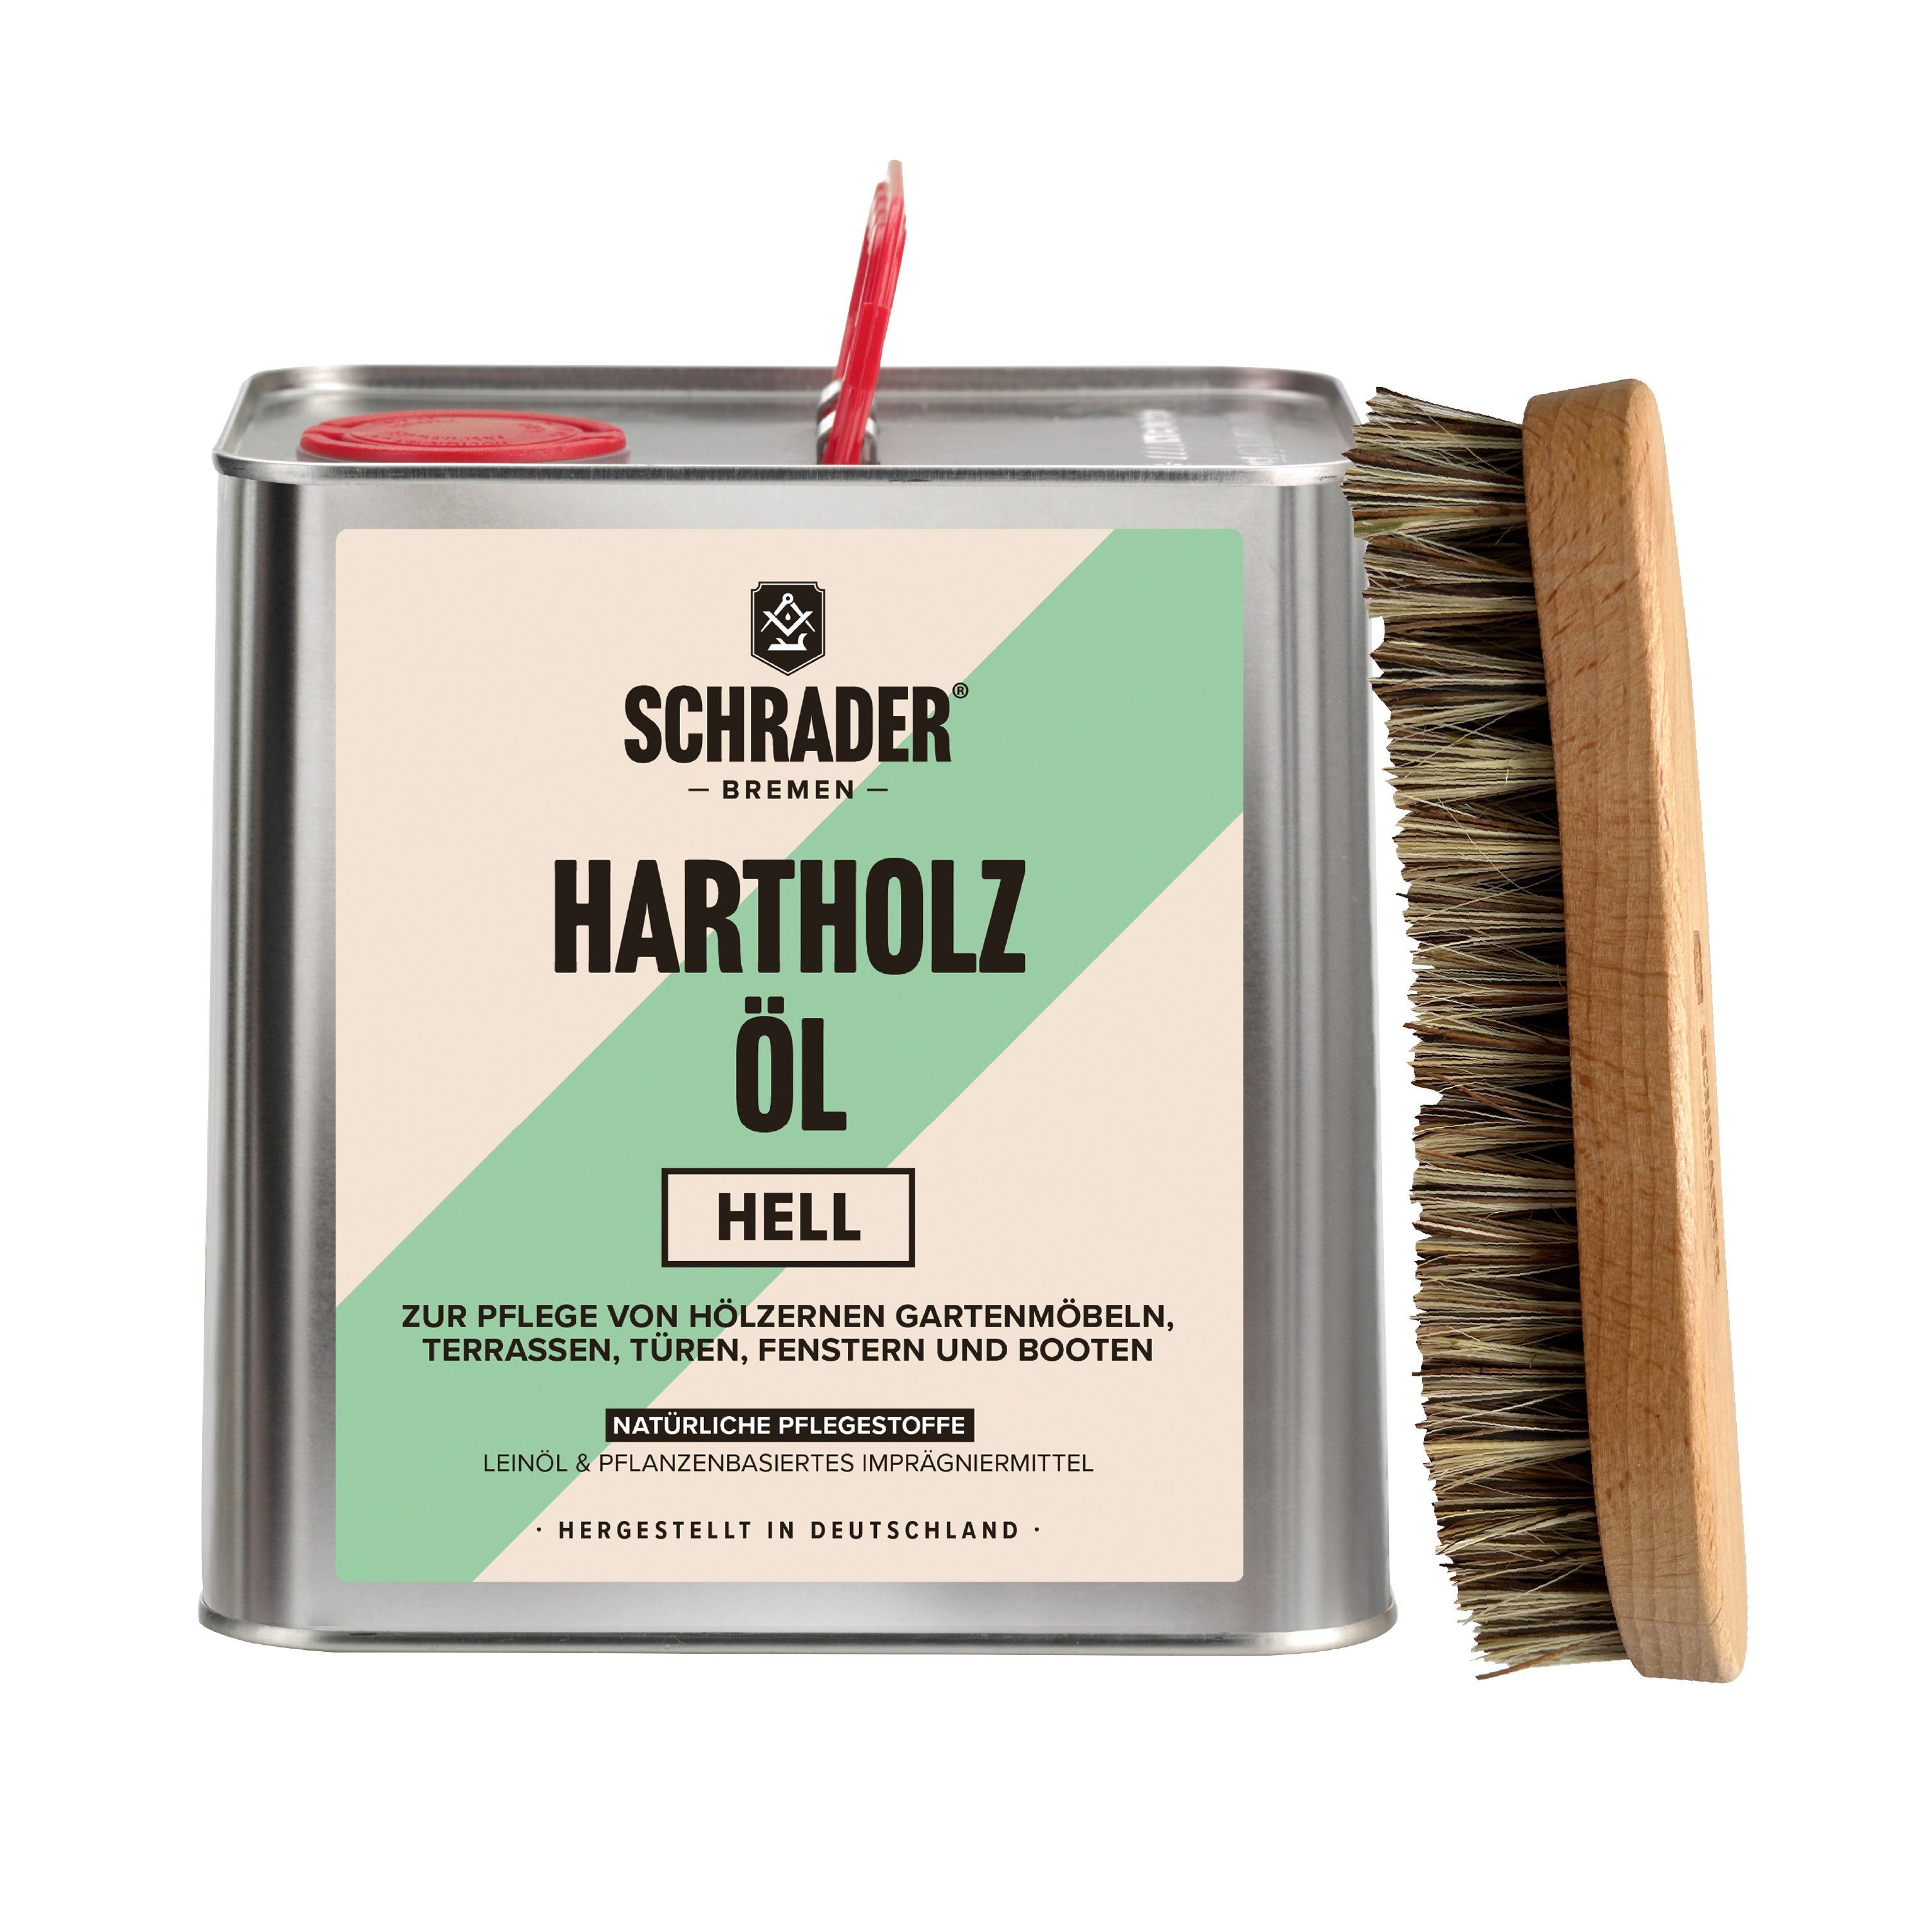 Made - Schmutzbürste Hartholzöl und Teaköl - Pflegeset 2-teilig - mit hell 2,5L in Germany -, Schrader Terrassenöl Enthält Hartholzöl -